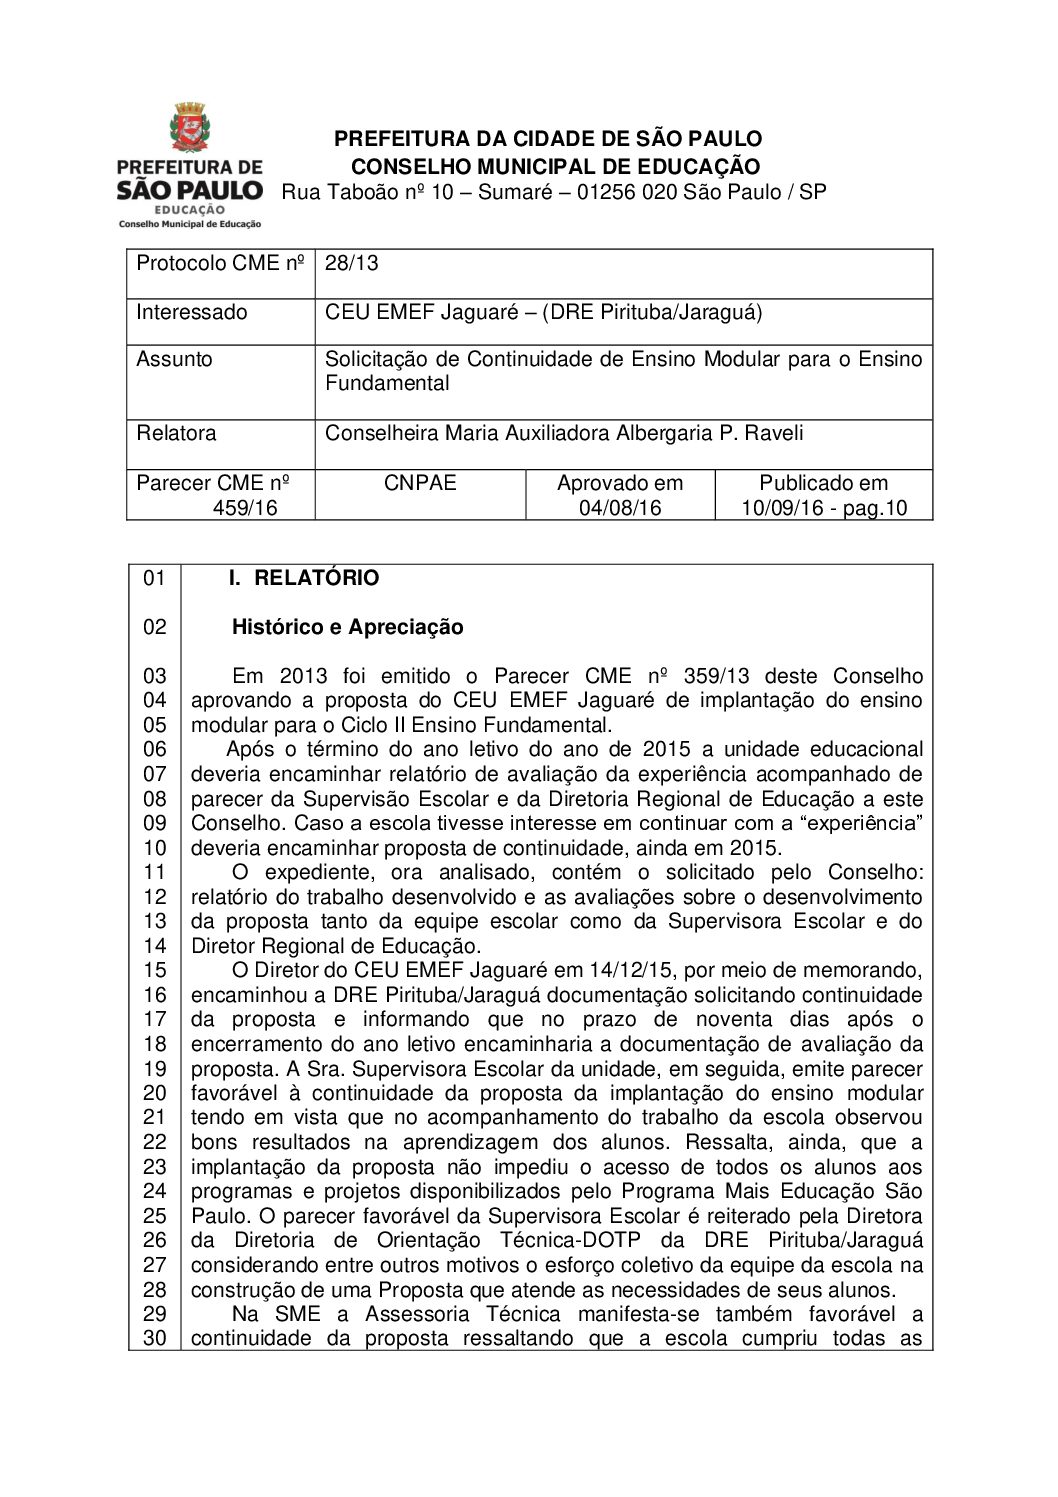 Parecer CME nº 459/2016 - CEU EMEF Jaguaré – (DRE Pirituba/Jaraguá) - Solicitação de Continuidade de Ensino Modular para o Ensino Fundamental 